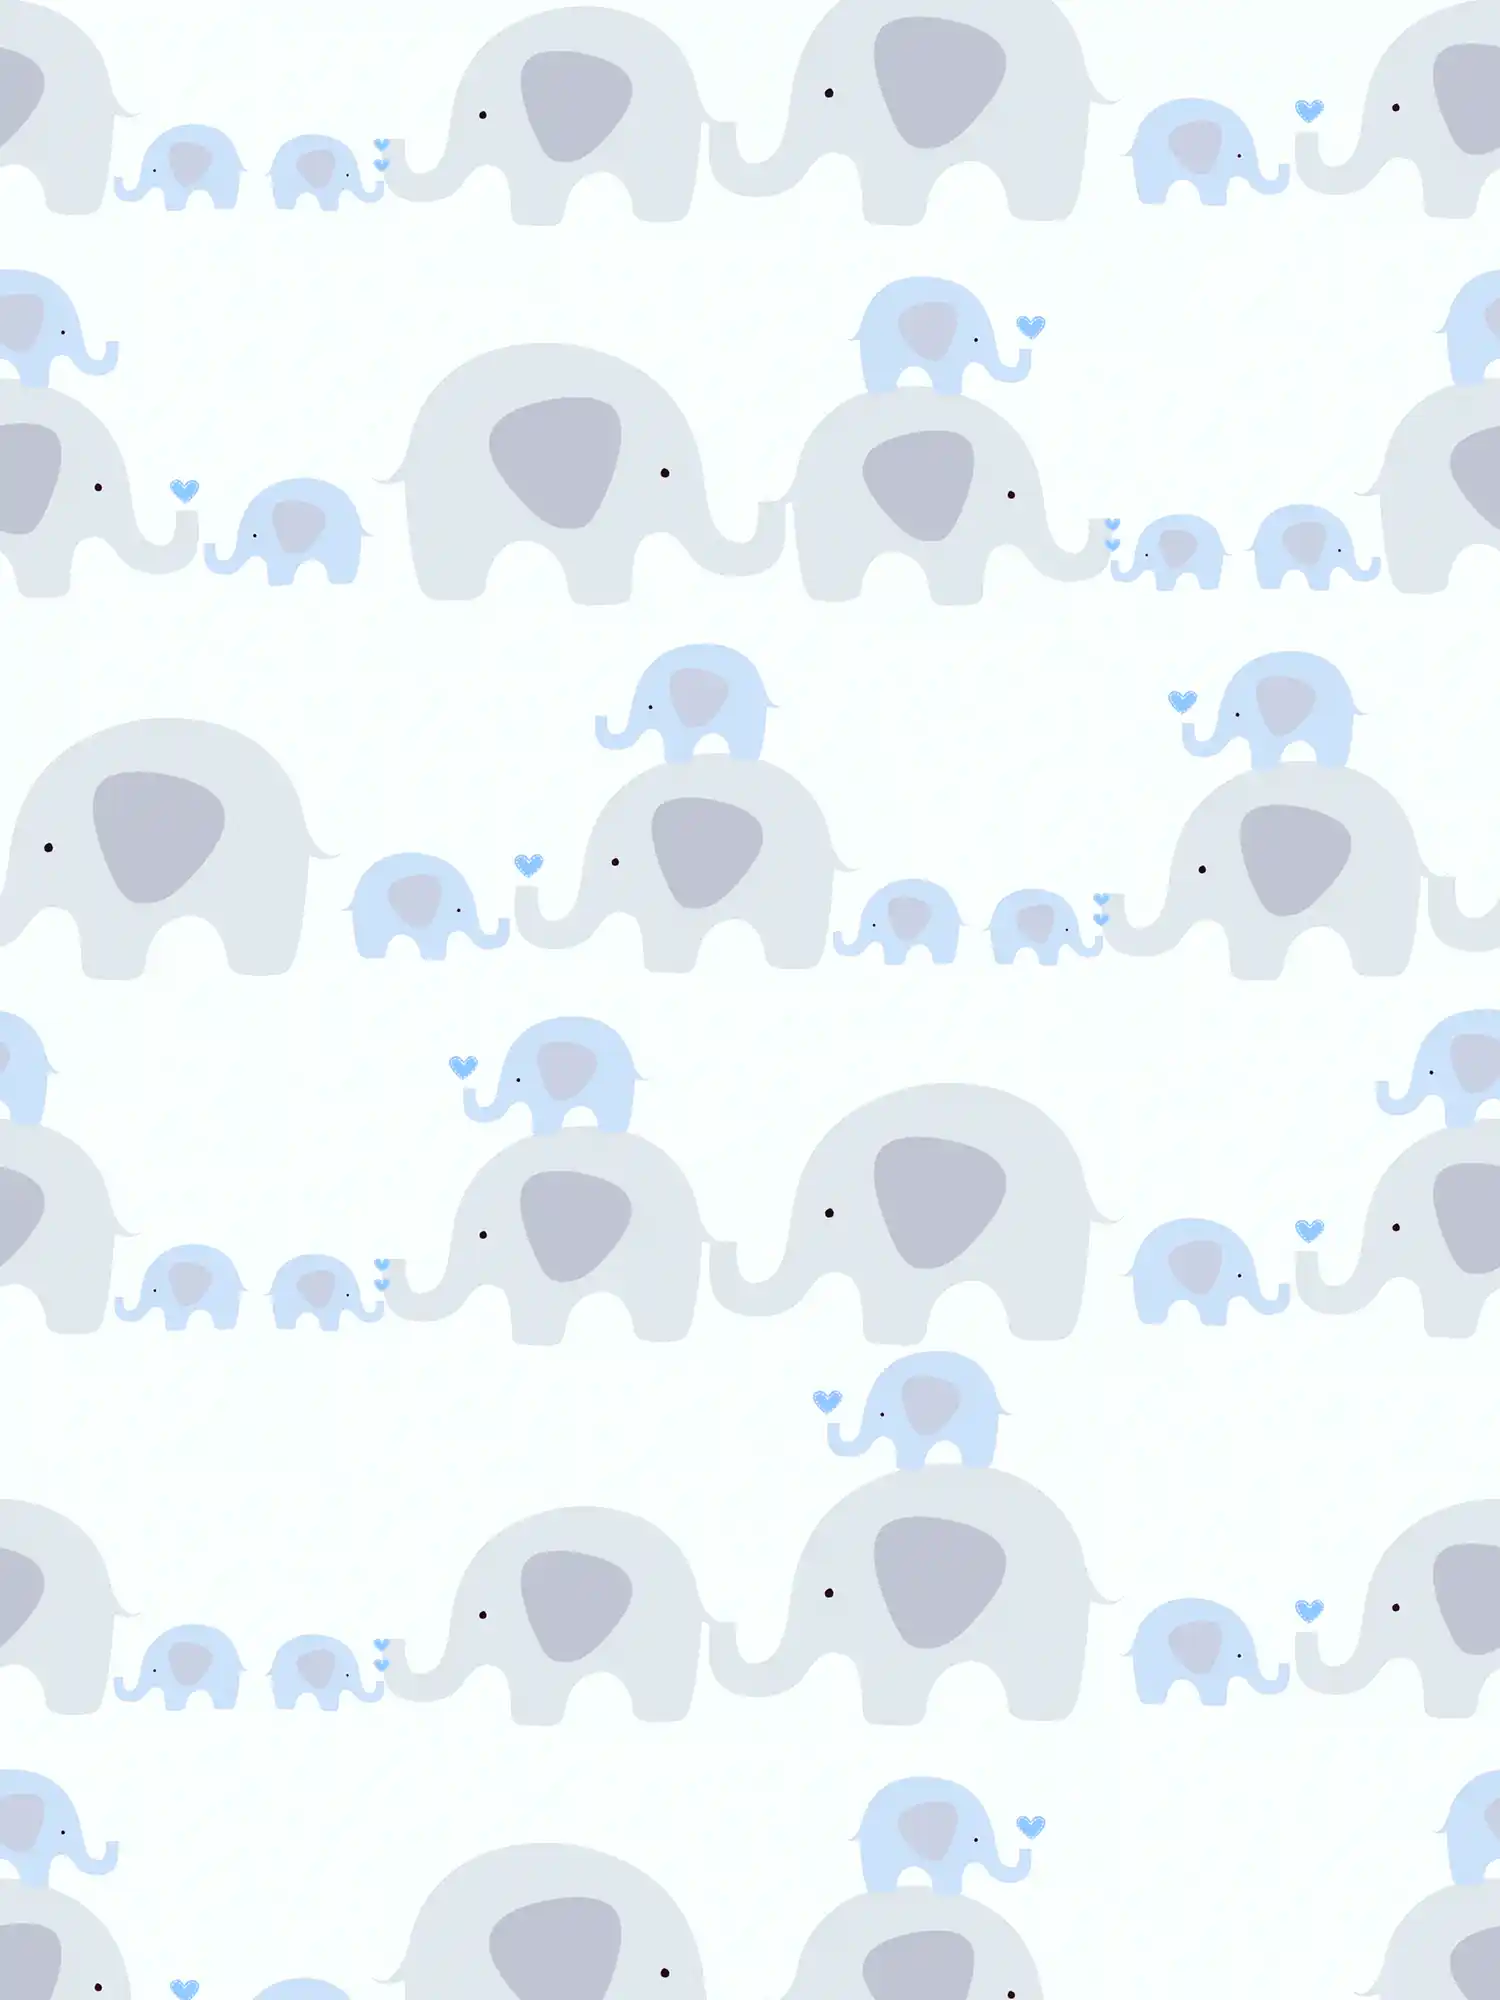 Nursery wallpaper boy elephants - blue, grey, white
